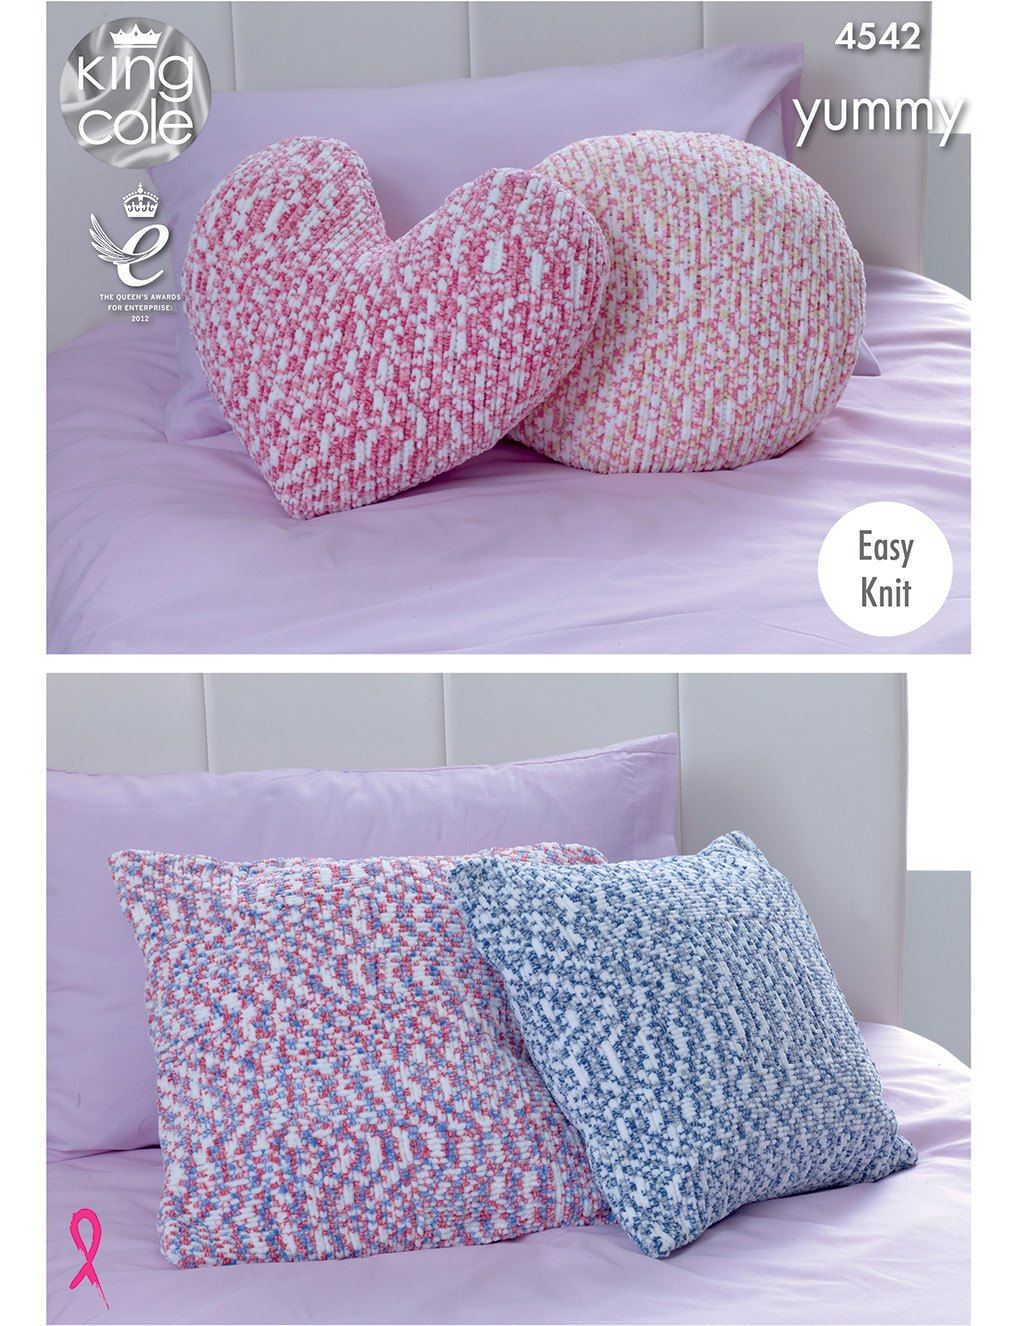 King Cole Yummy knitting pattern (4542) cushions